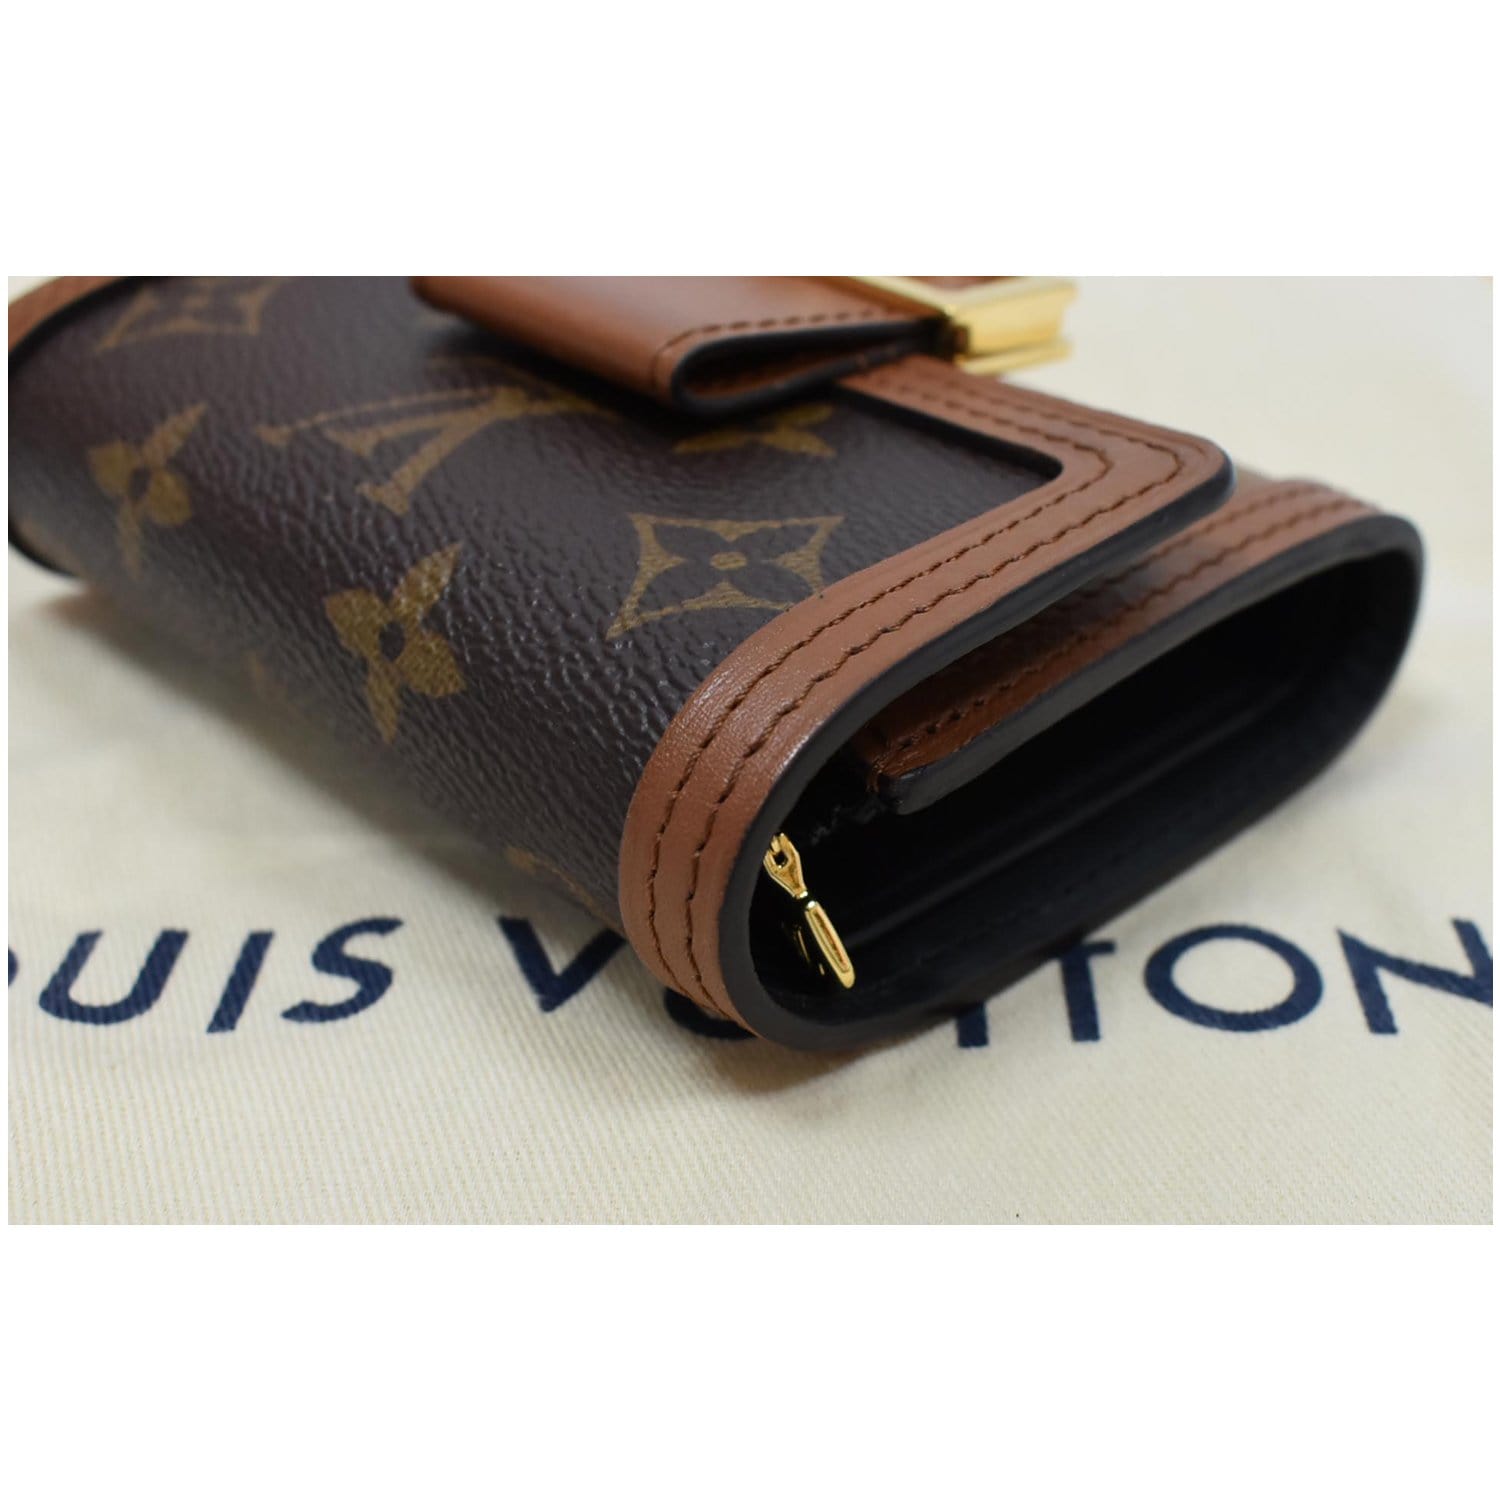 Louis Vuitton Dauphine Compact Canvas Wallet